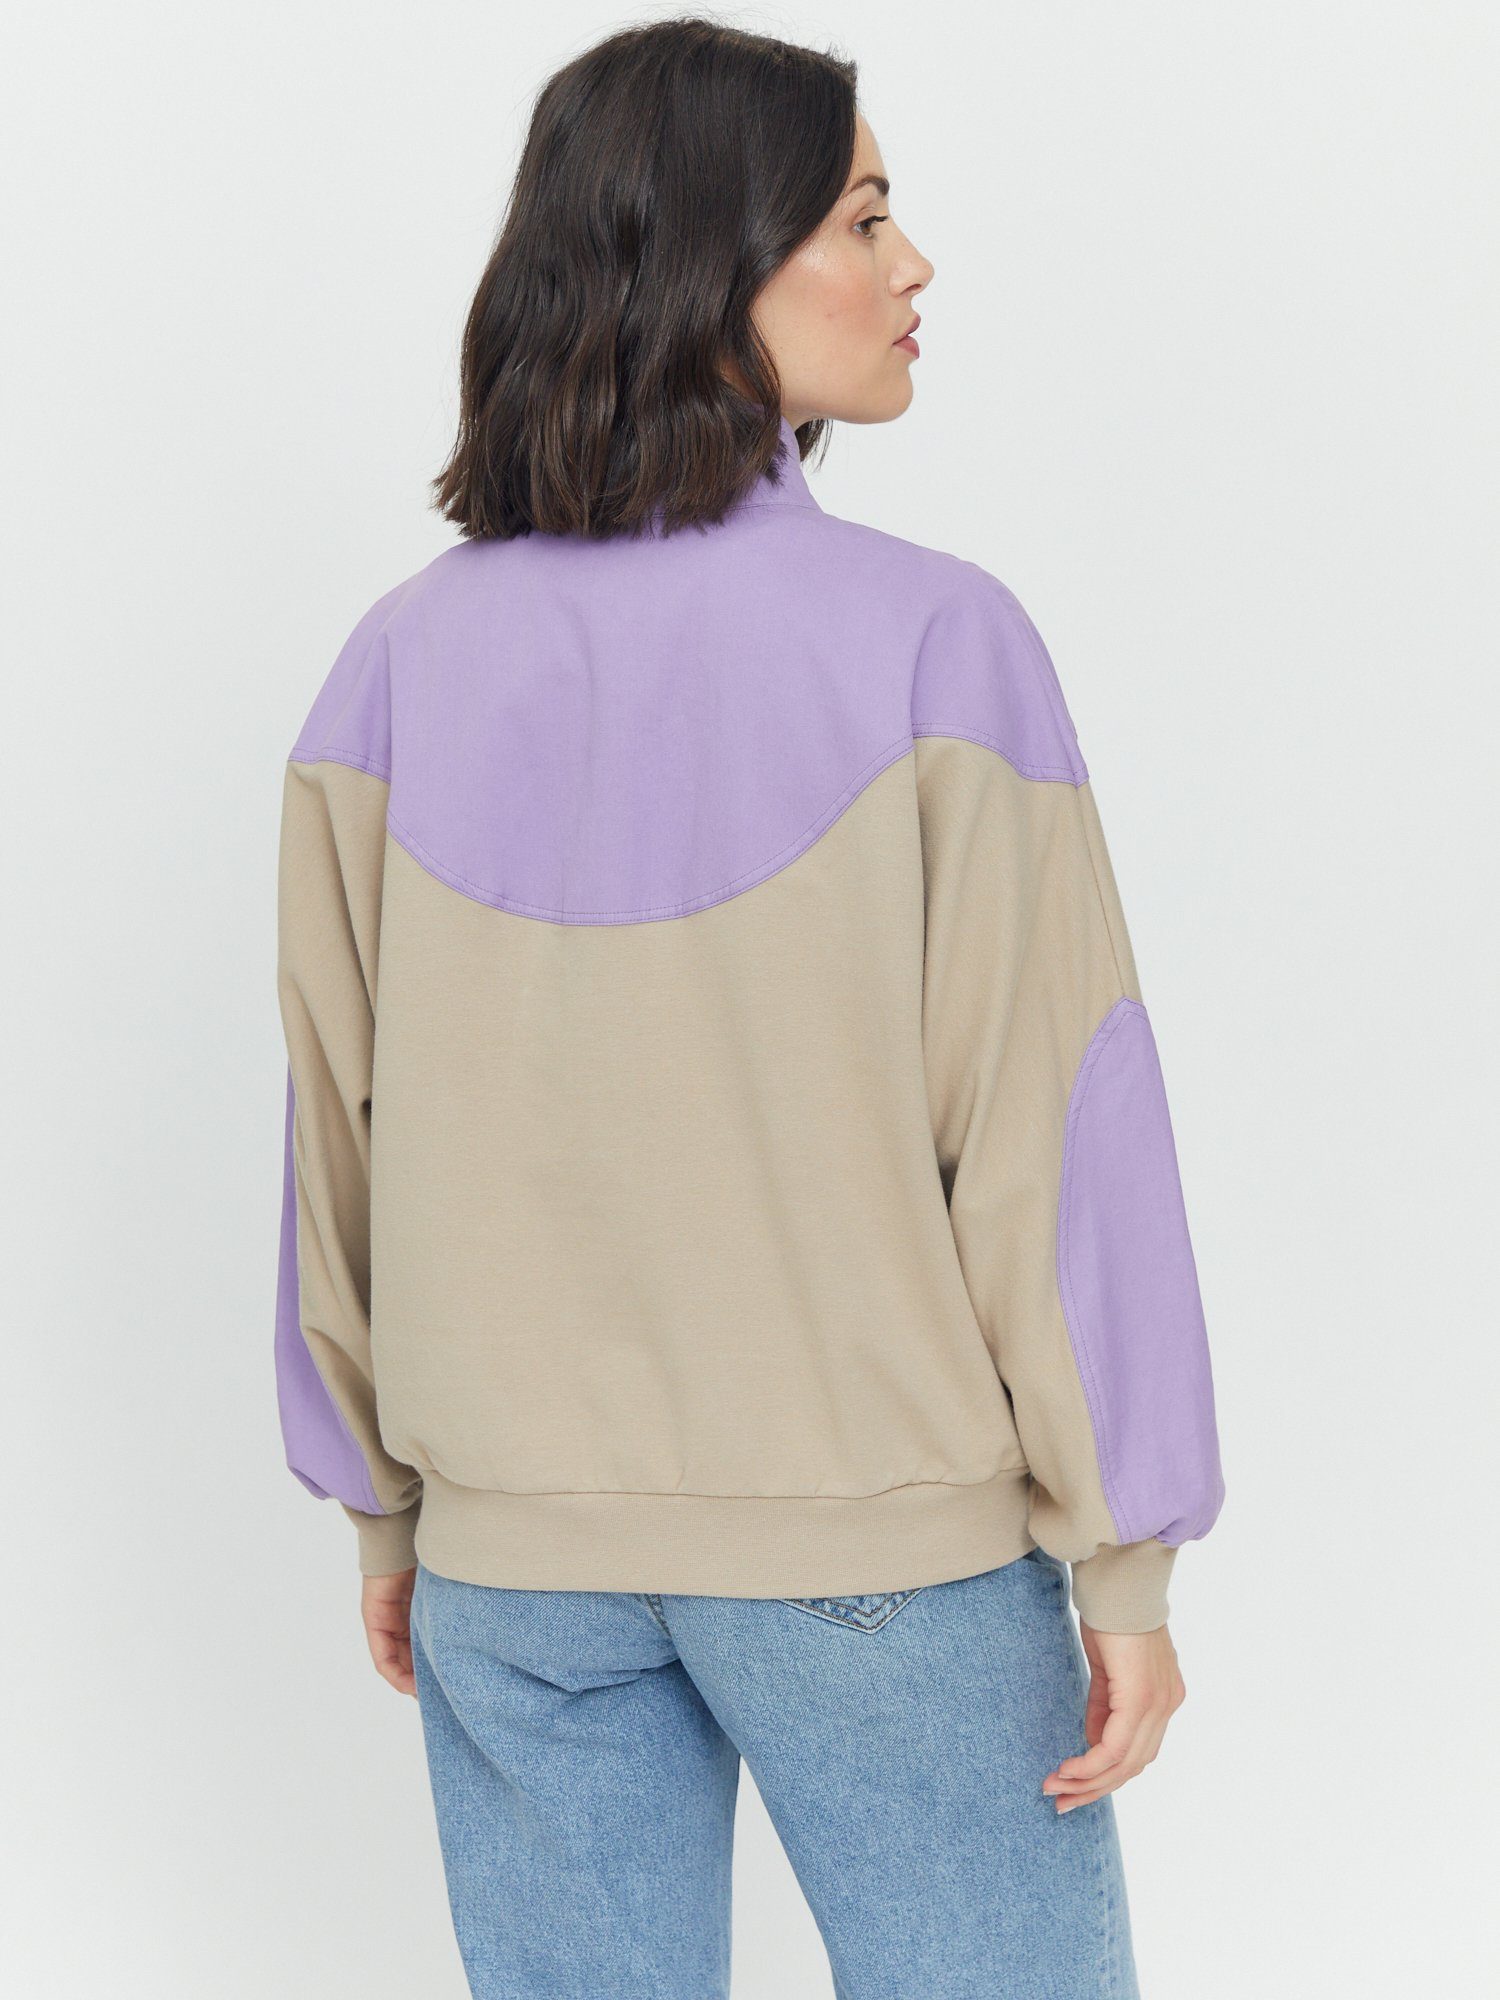 Half Vera gemütlich Sweatshirt Zip sportlich purple MAZINE taupe haze/light